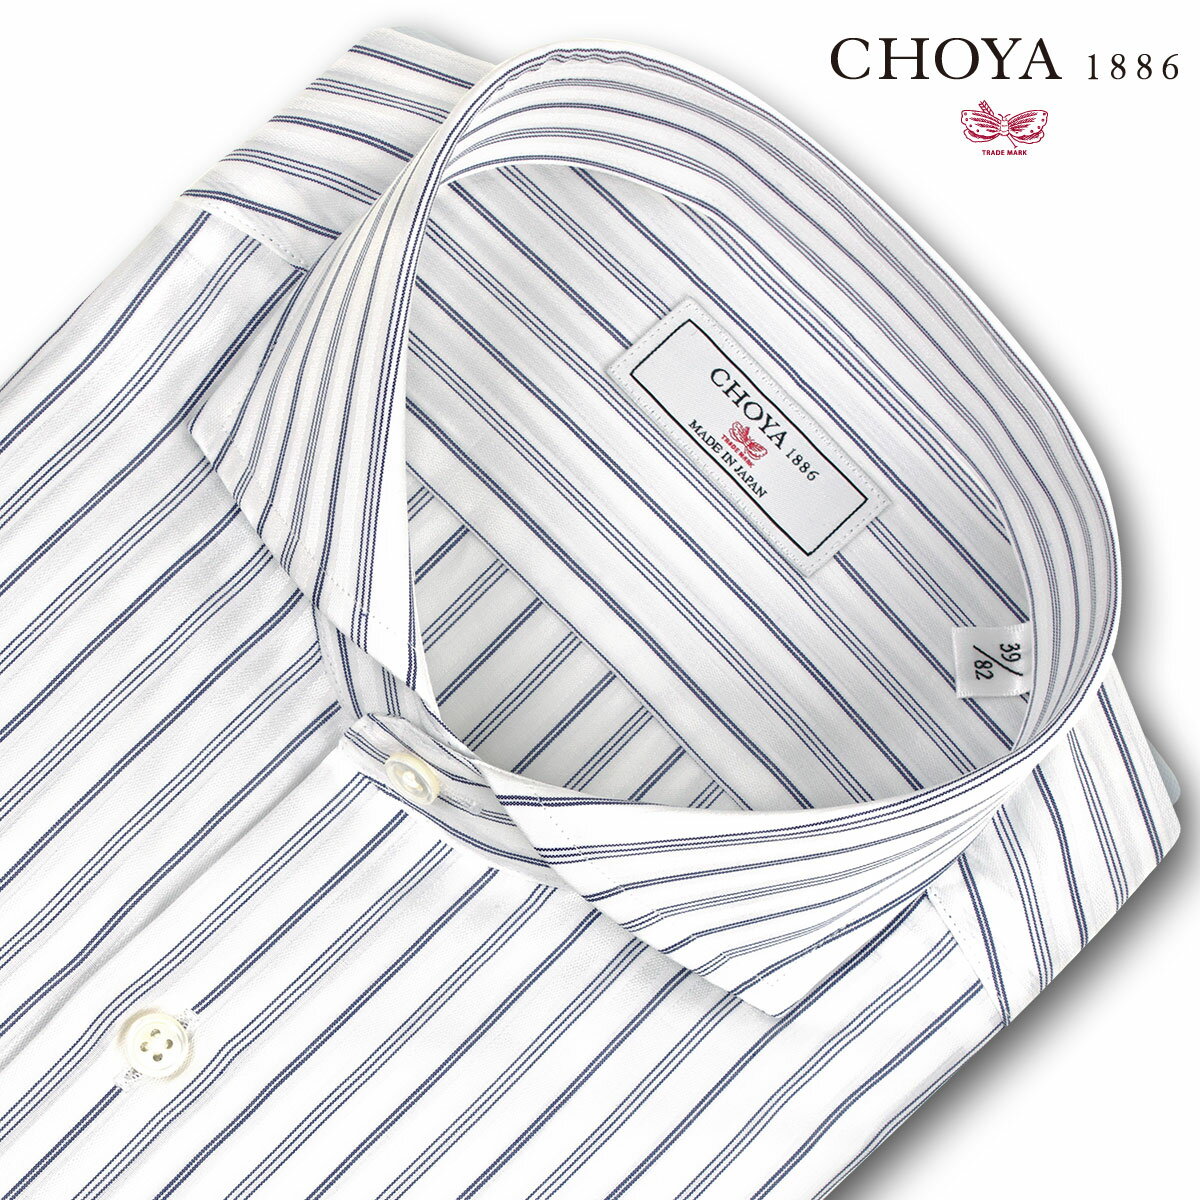 長袖 ワイシャツ メンズ カッターシャツ 綿100% 日本製Yシャツ CHOYA1886 ブルーストライプ カッタウェイシャツ 綿100% ブルー(cvd210-455) 2406SS